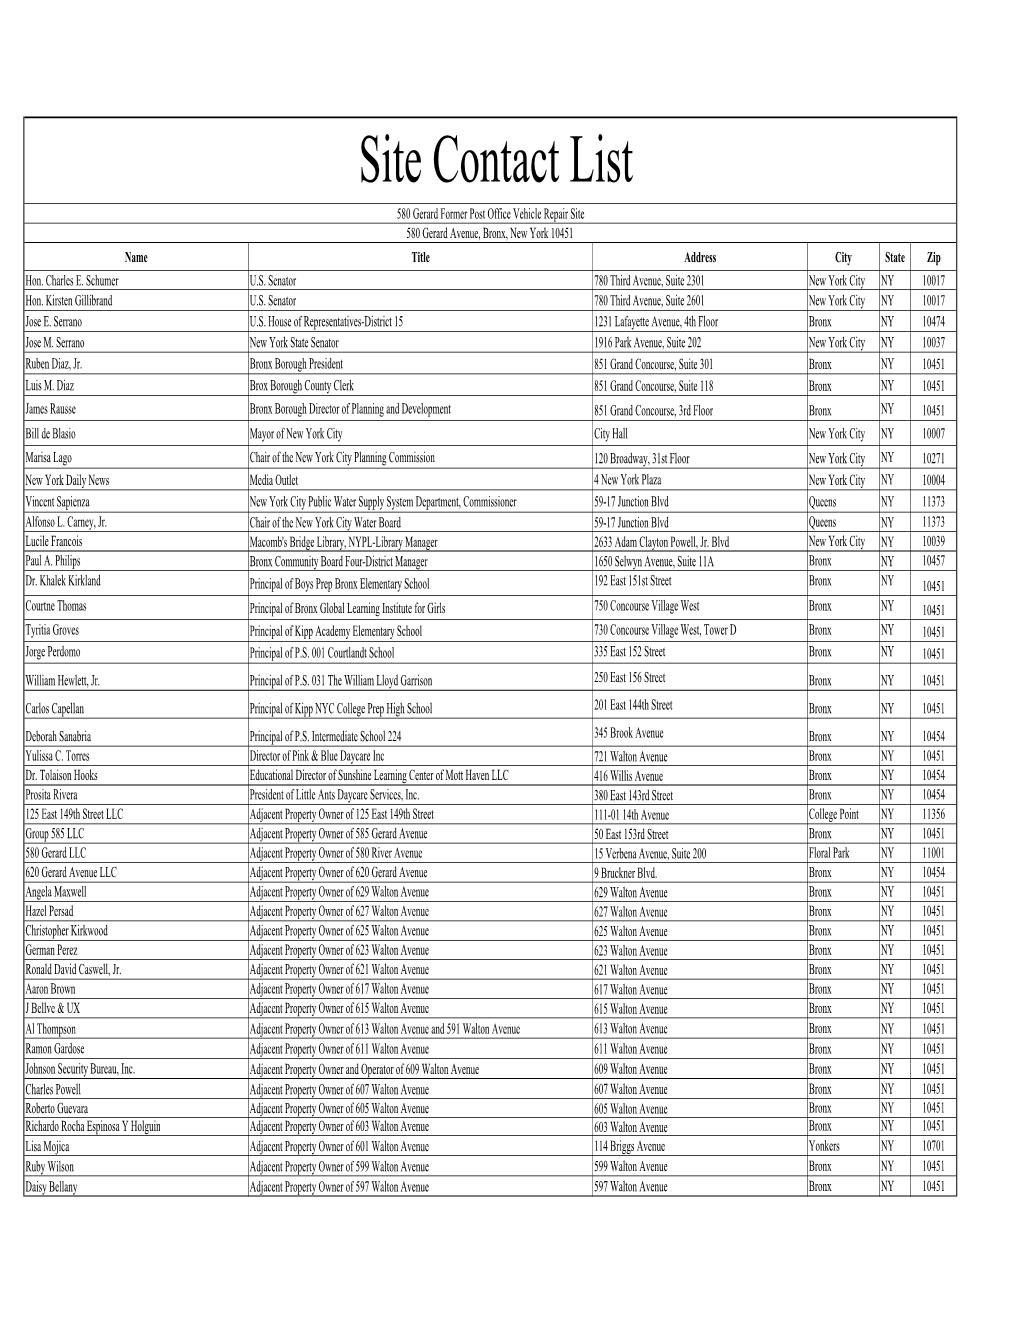 Site Contact List.Xlsx